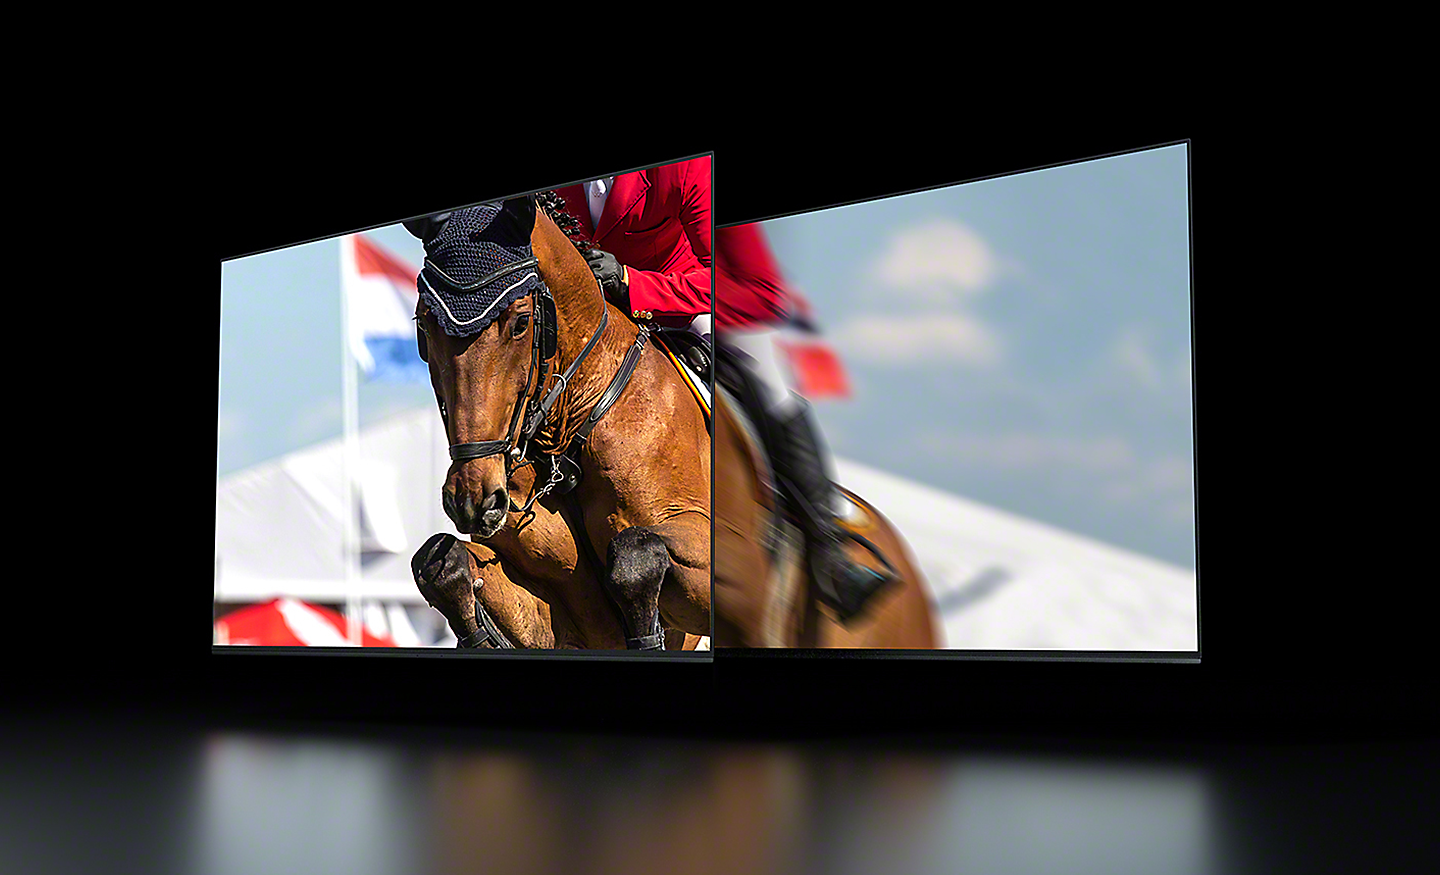 Twee frames van hetzelfde beeldmateriaal: een snelle actiescène van een paard met ruiter dat over een hek springt